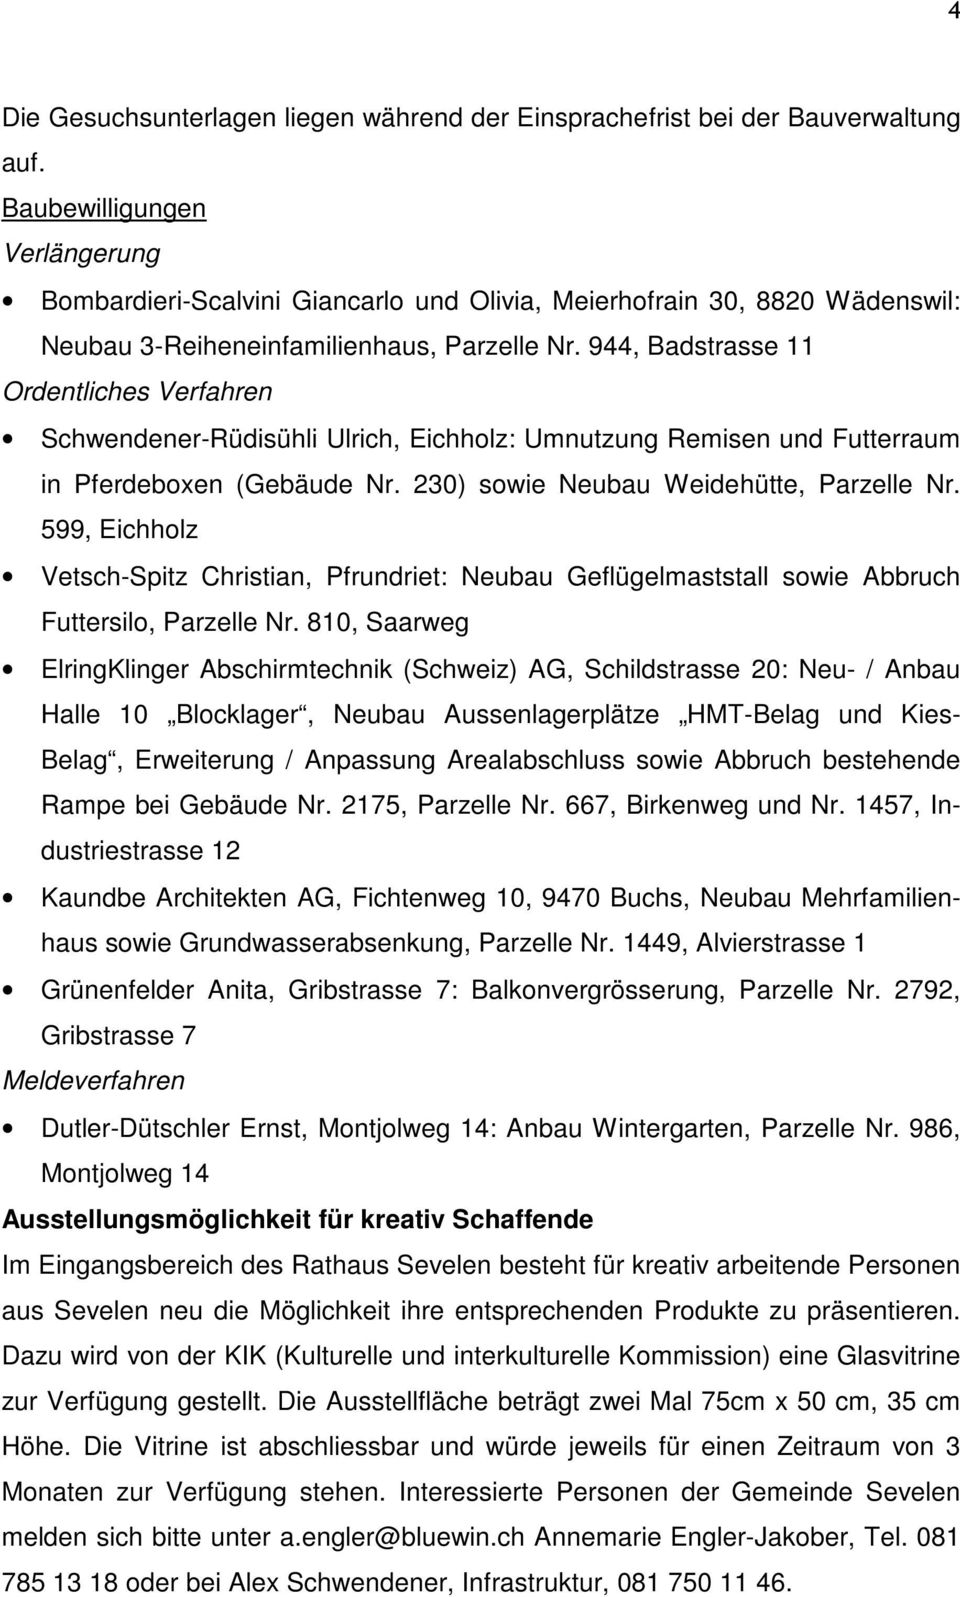 944, Badstrasse 11 Ordentliches Verfahren Schwendener-Rüdisühli Ulrich, Eichholz: Umnutzung Remisen und Futterraum in Pferdeboxen (Gebäude Nr. 230) sowie Neubau Weidehütte, Parzelle Nr.